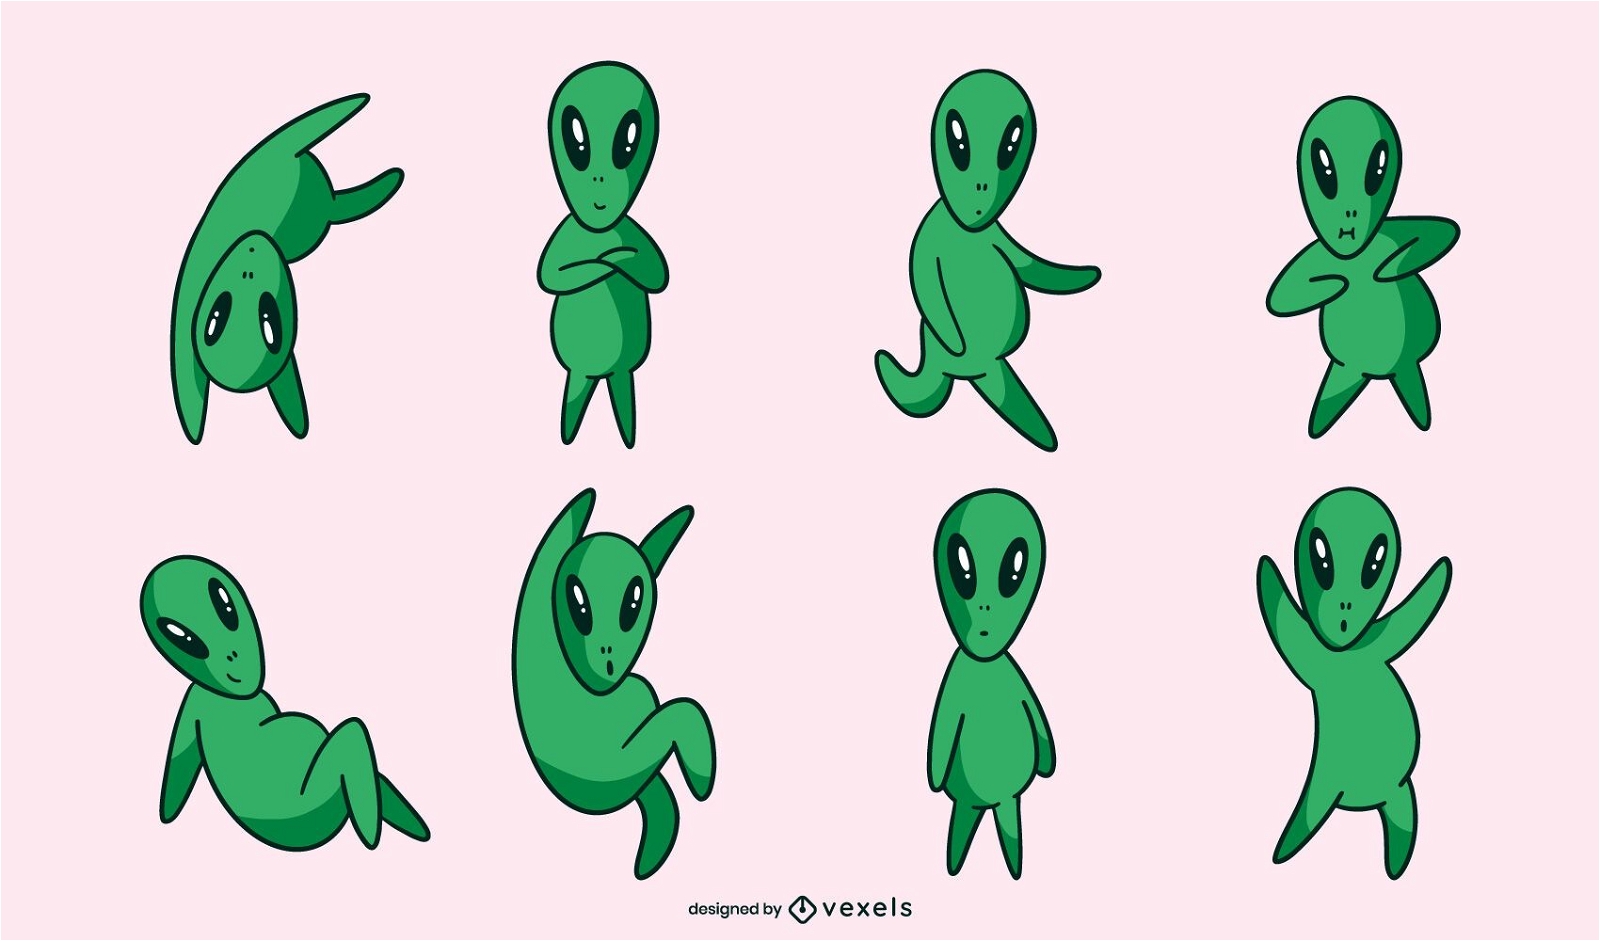 Conjunto de poses de personaje alienígena verde lindo